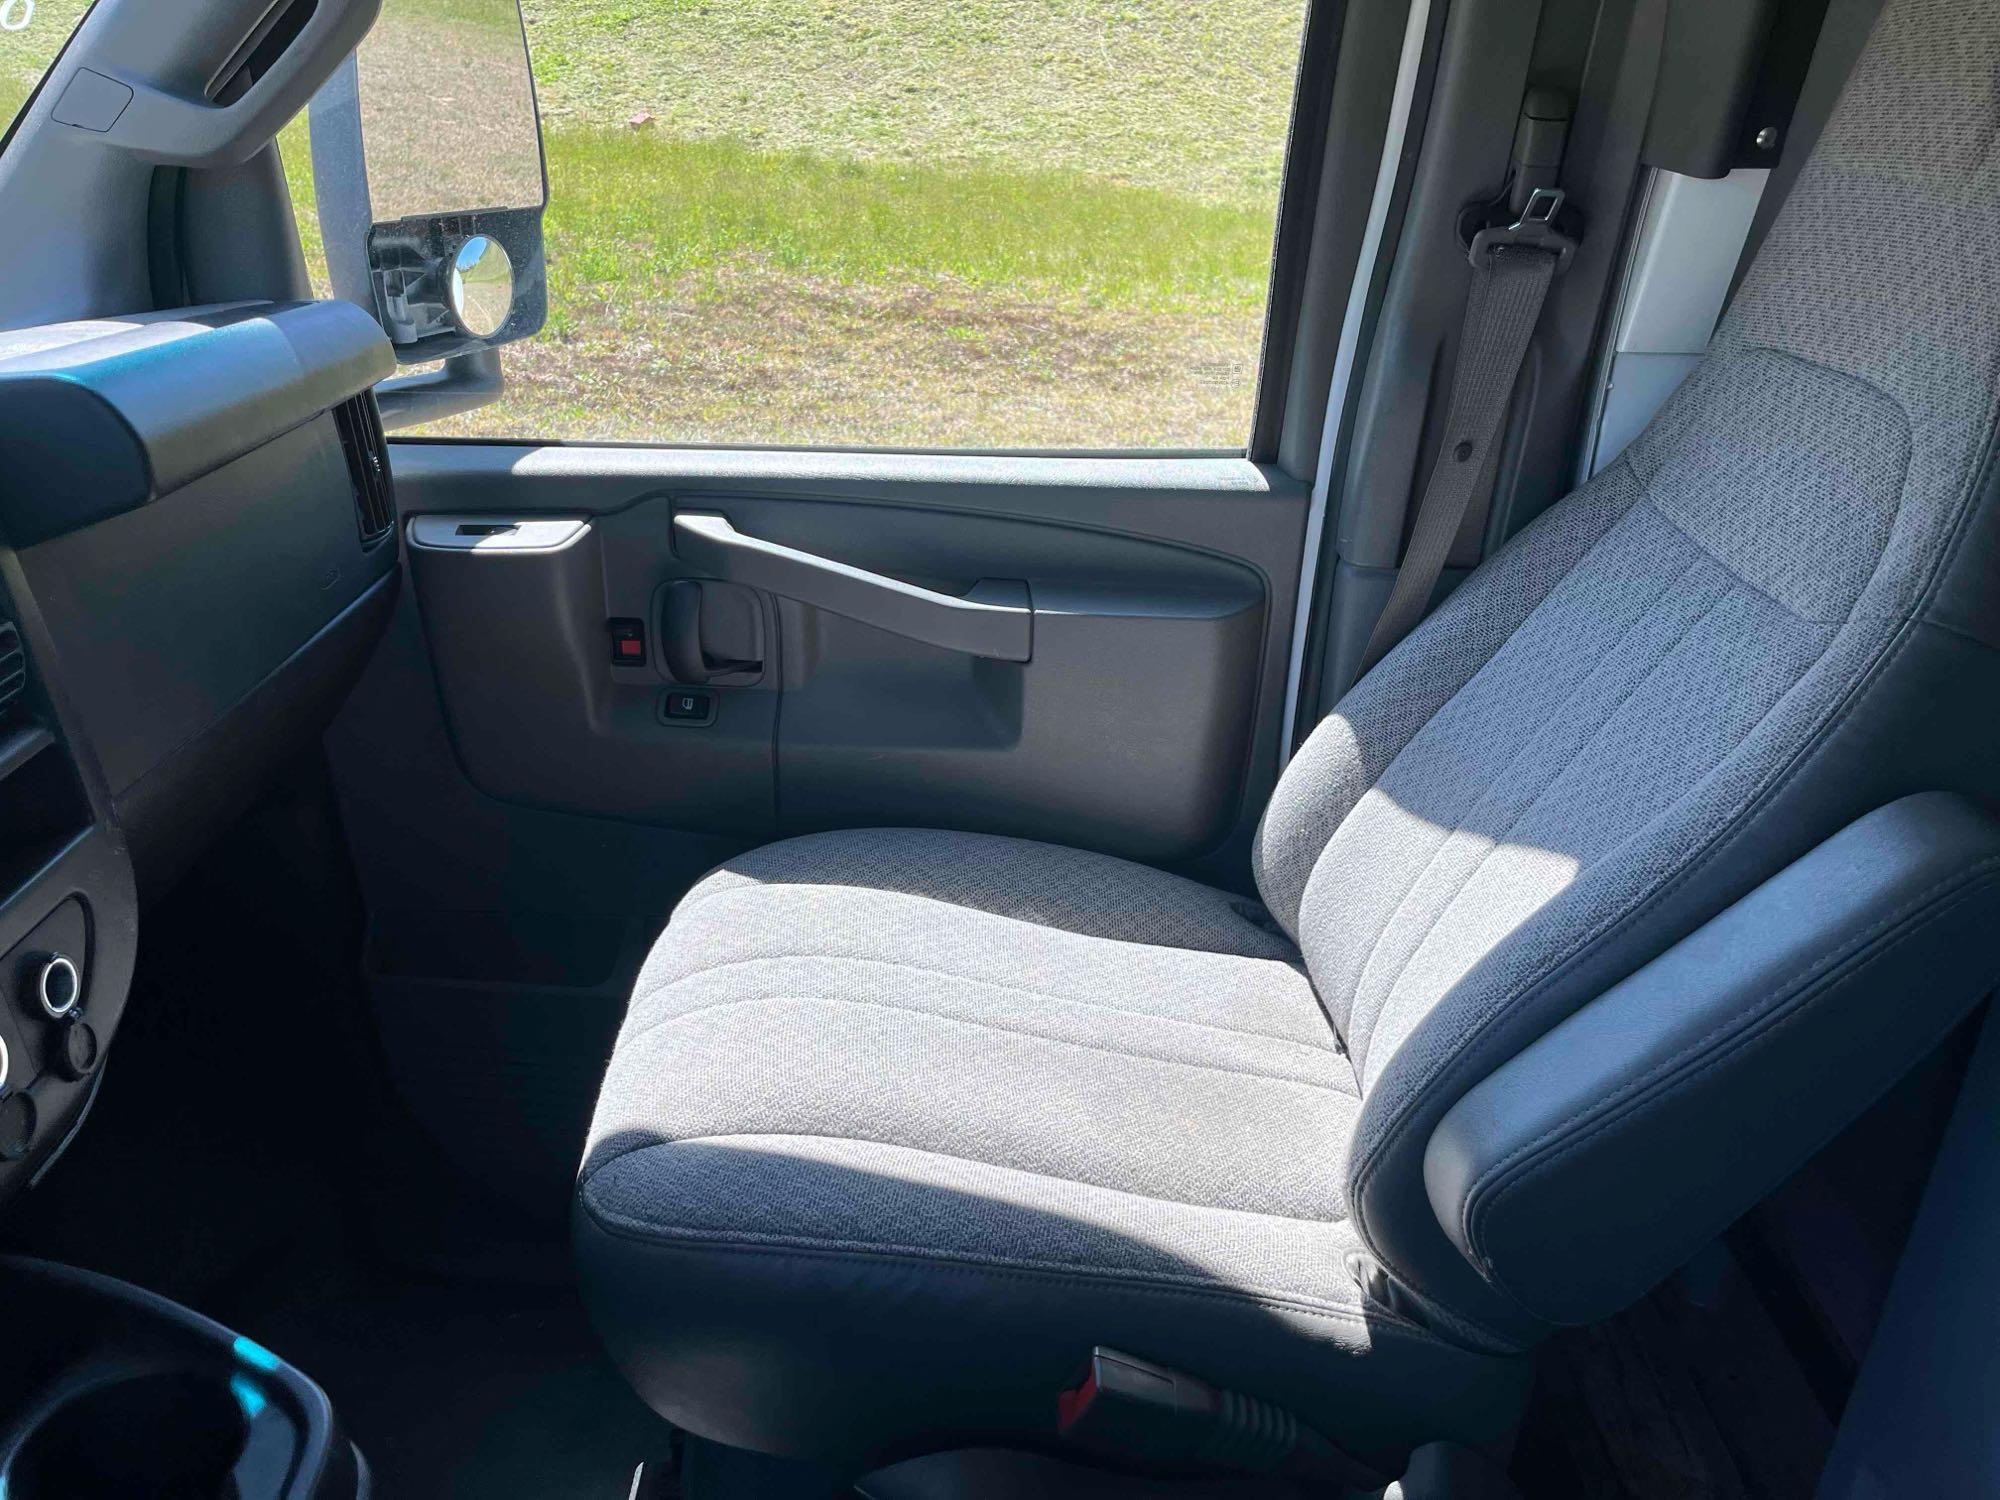 2017 Chevrolet Express Van, VIN # 1GB0GRFGXH1342036